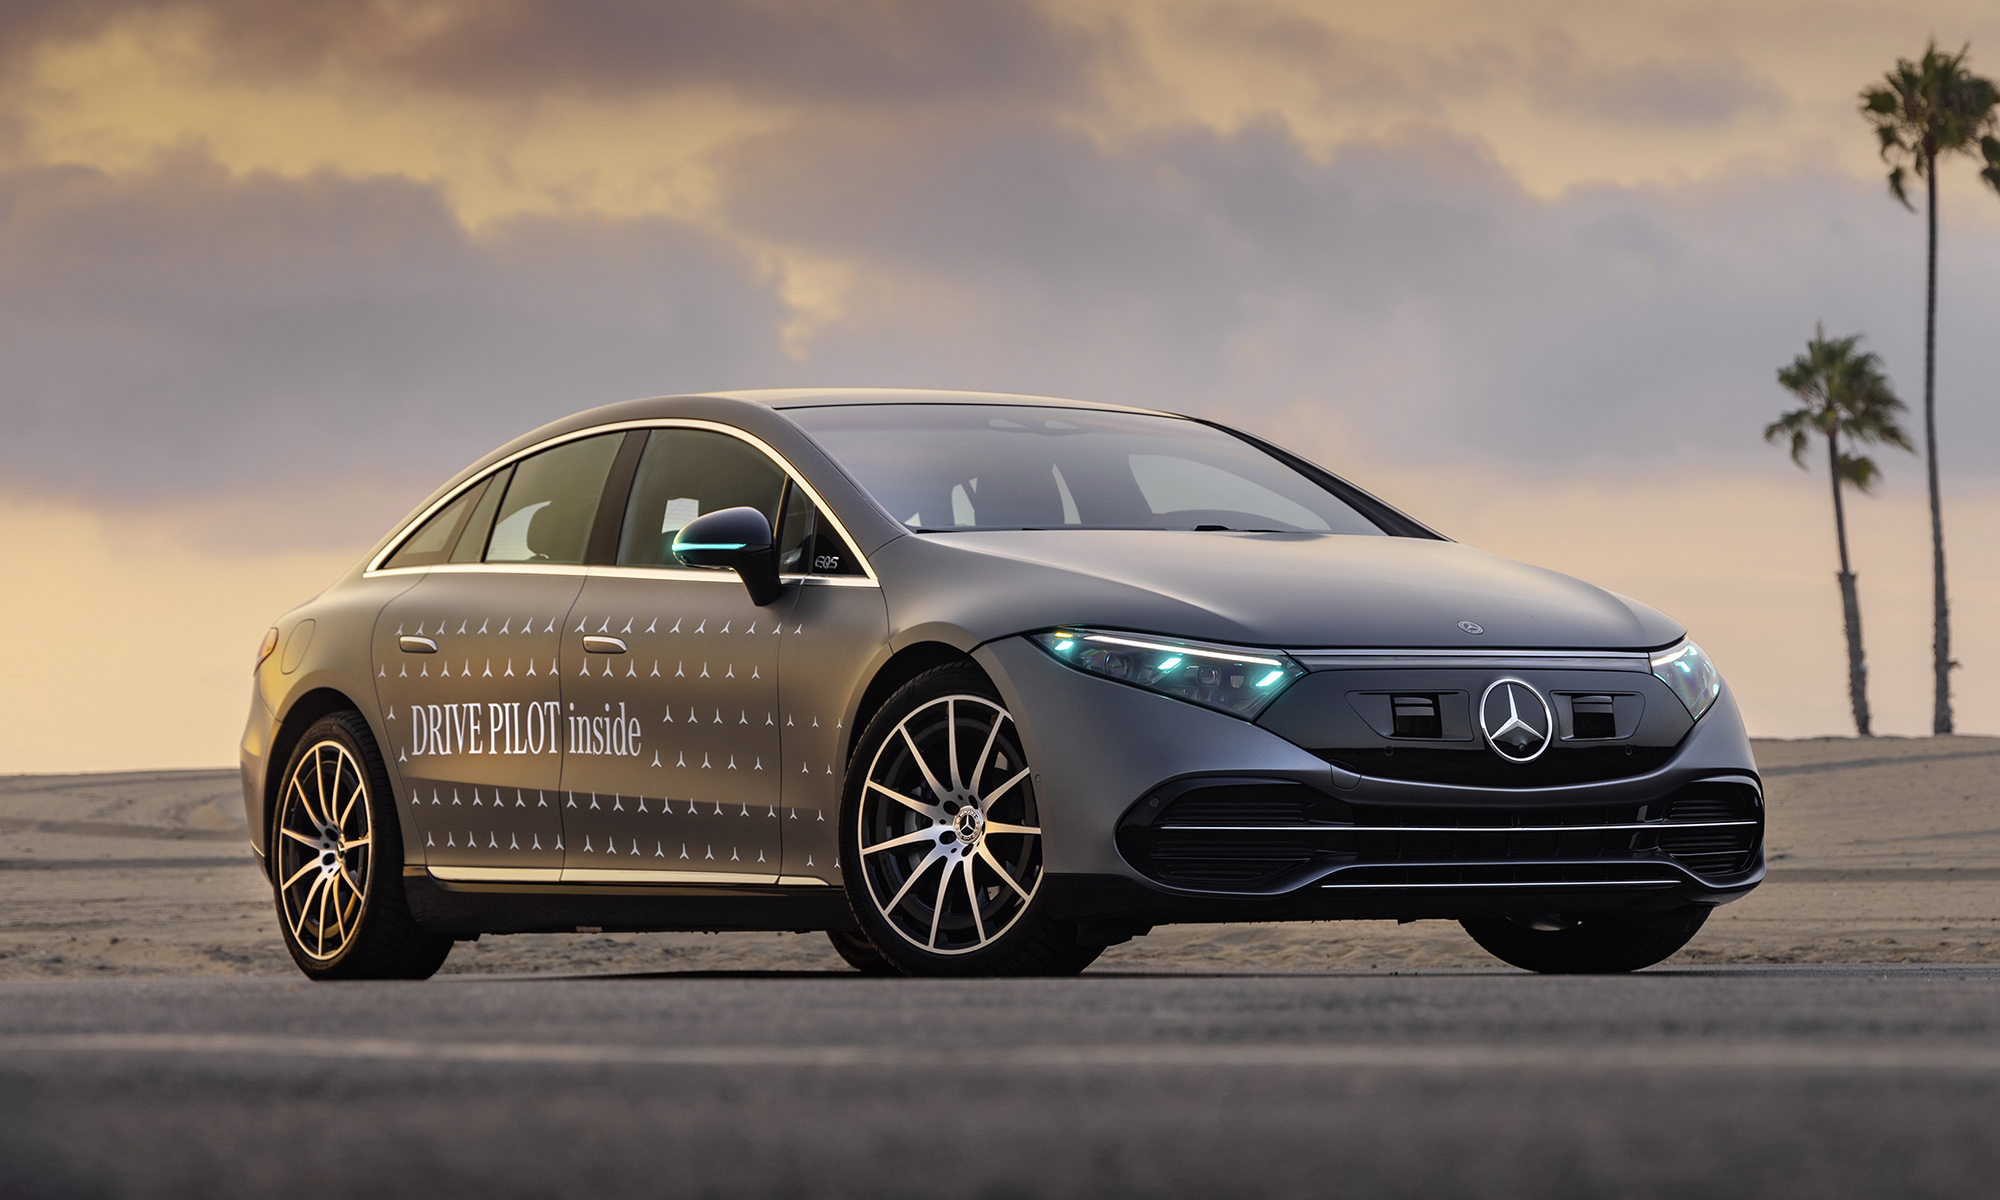 Mercedes-Benz usará los tonos turquesas para identificar a sus vehículos autónomos.